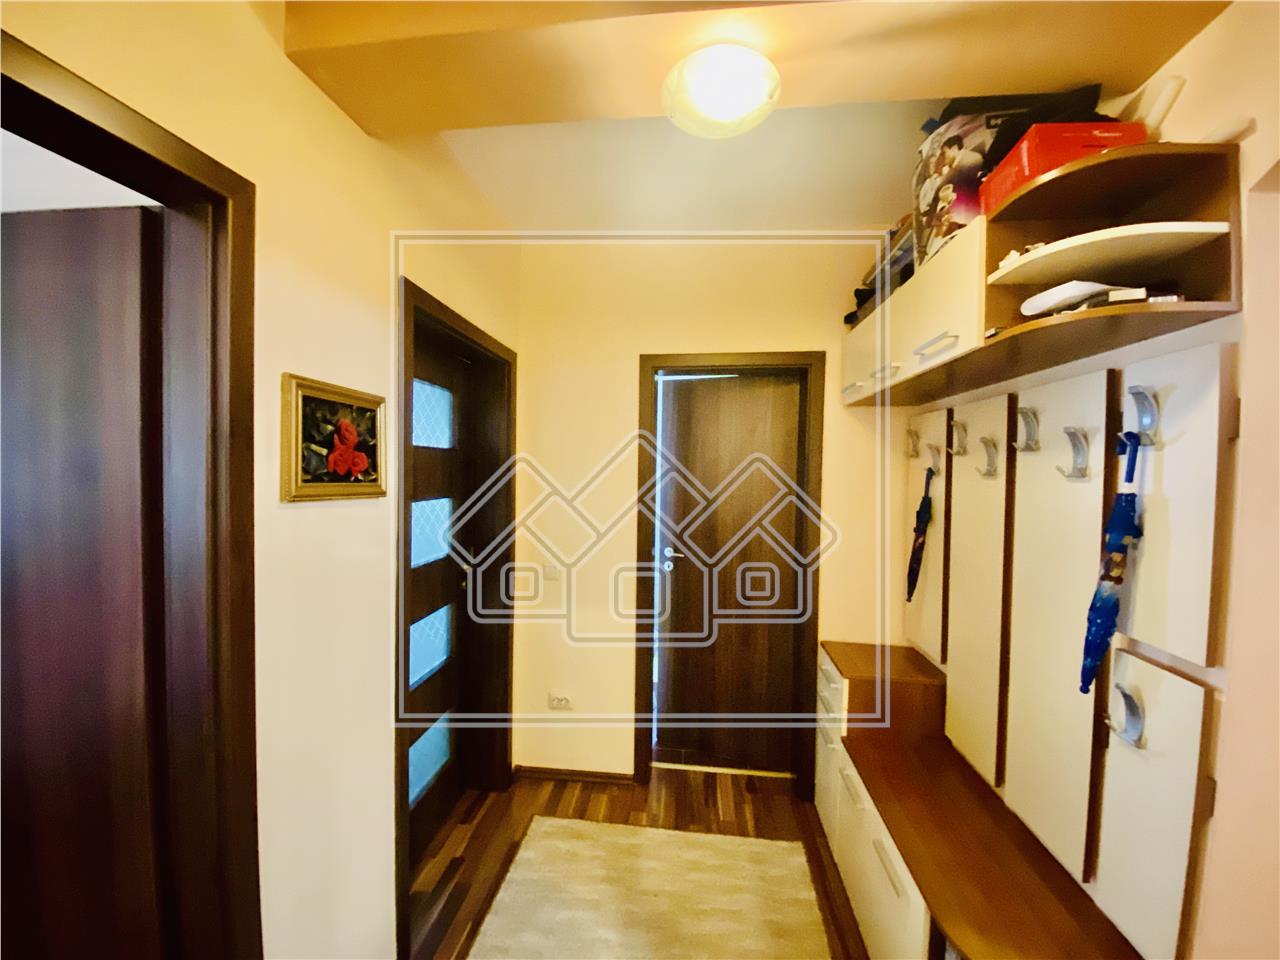 Apartament de vanzare in Sibiu - 3 camere si balcon - Zona Rahovei